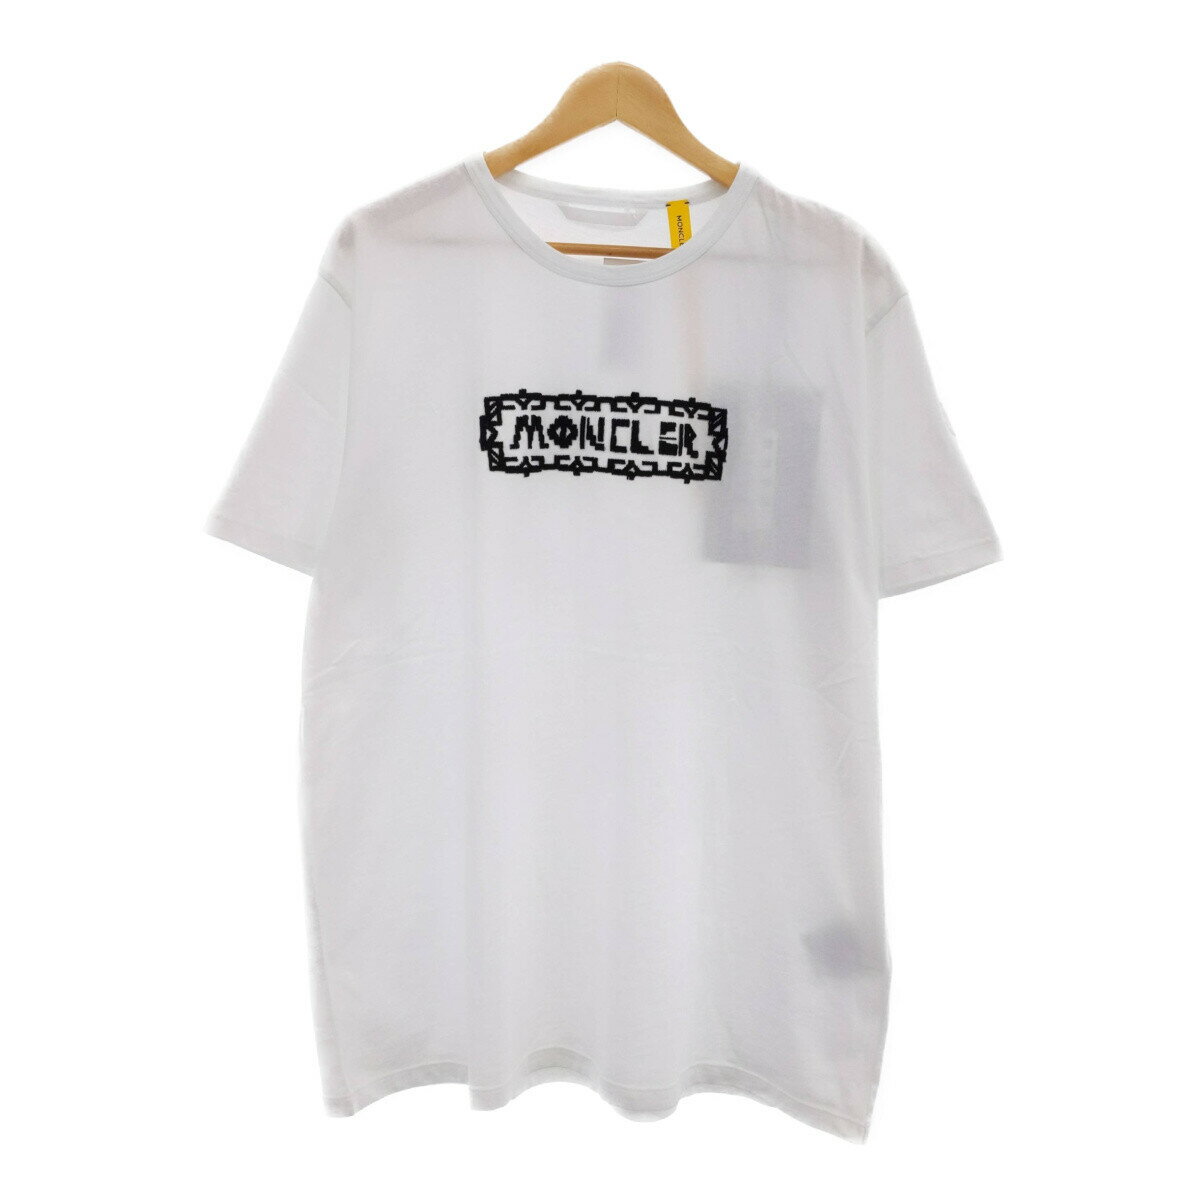 トップス, Tシャツ・カットソー 2 MONCLER GENIUS Fergus Purcell 20SS T-shirt Tee T 1952 logo WHITE XXL 30800 MENS ITFWKGVPTCZK RKR483S